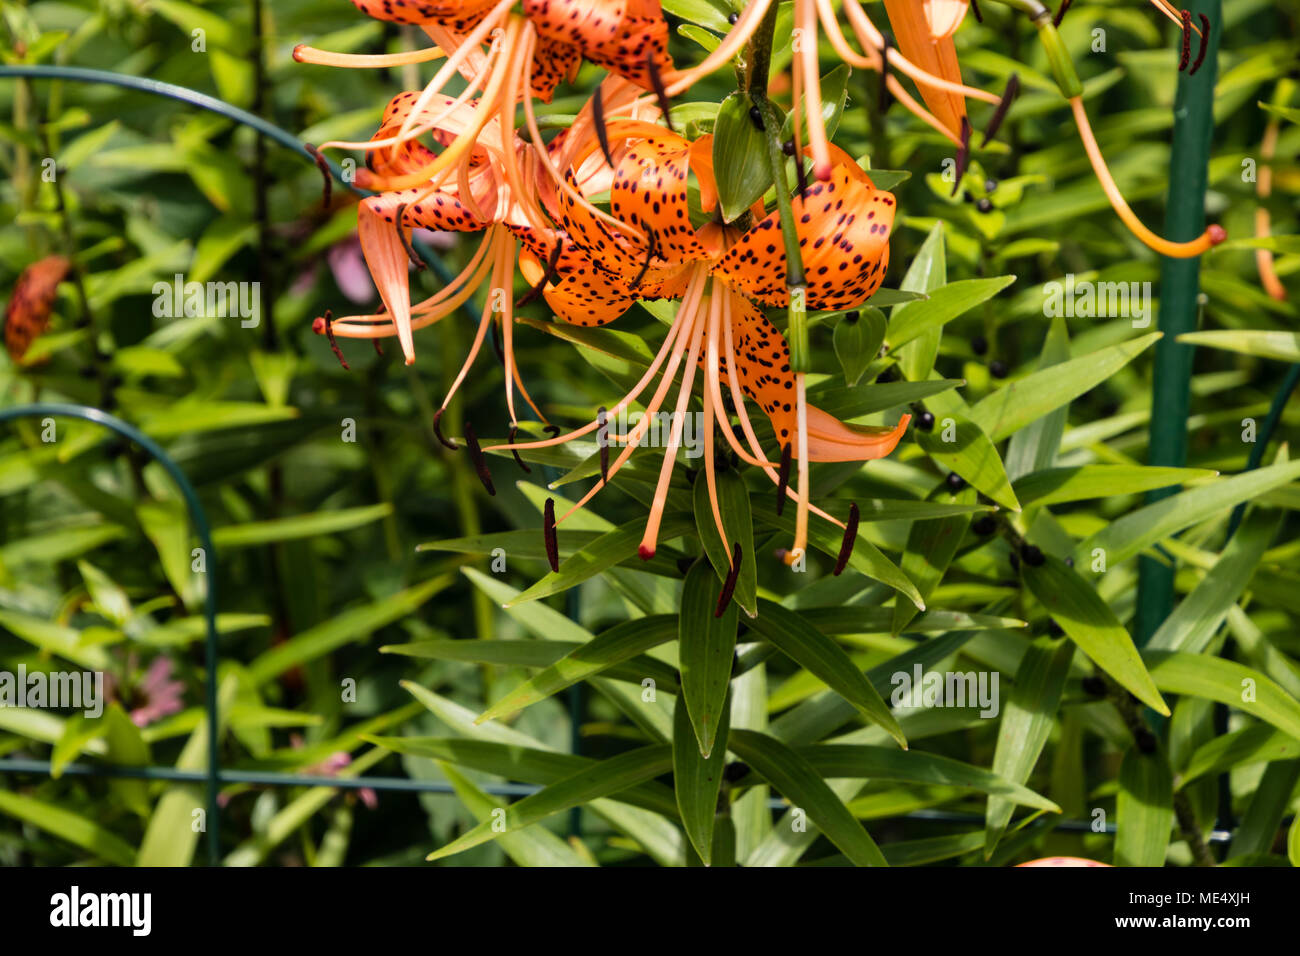 Tiger Lily blooms orientée vers le bas qui offre une légère protection contre les éléments, généralement Banque D'Images